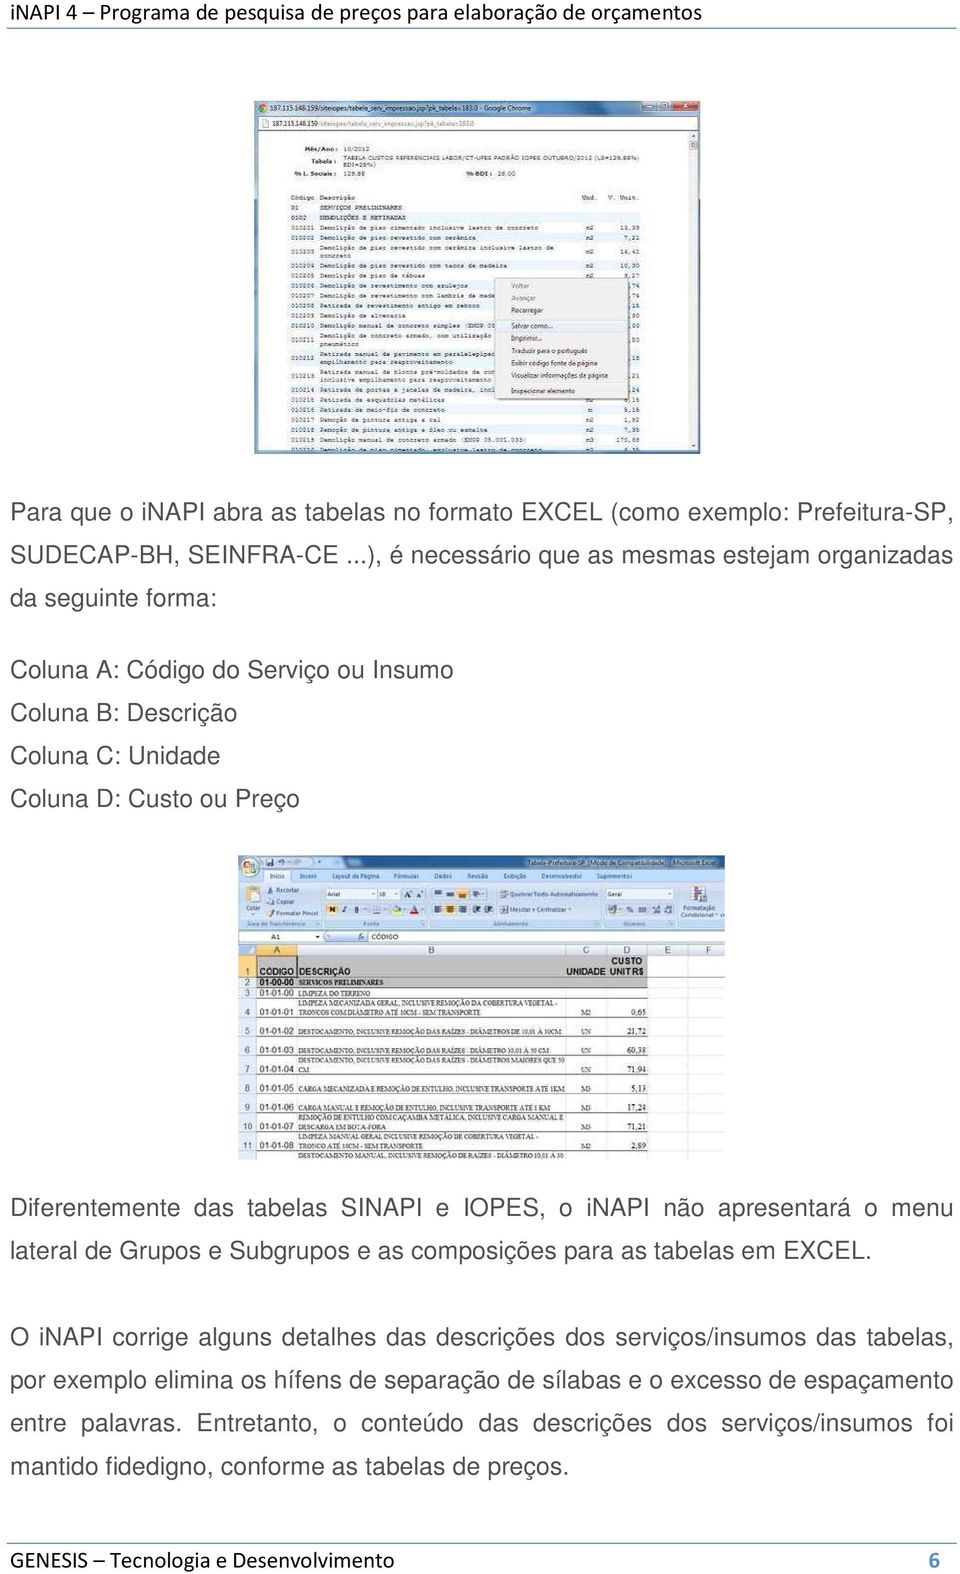 das tabelas SINAPI e IOPES, o inapi não apresentará o menu lateral de Grupos e Subgrupos e as composições para as tabelas em EXCEL.